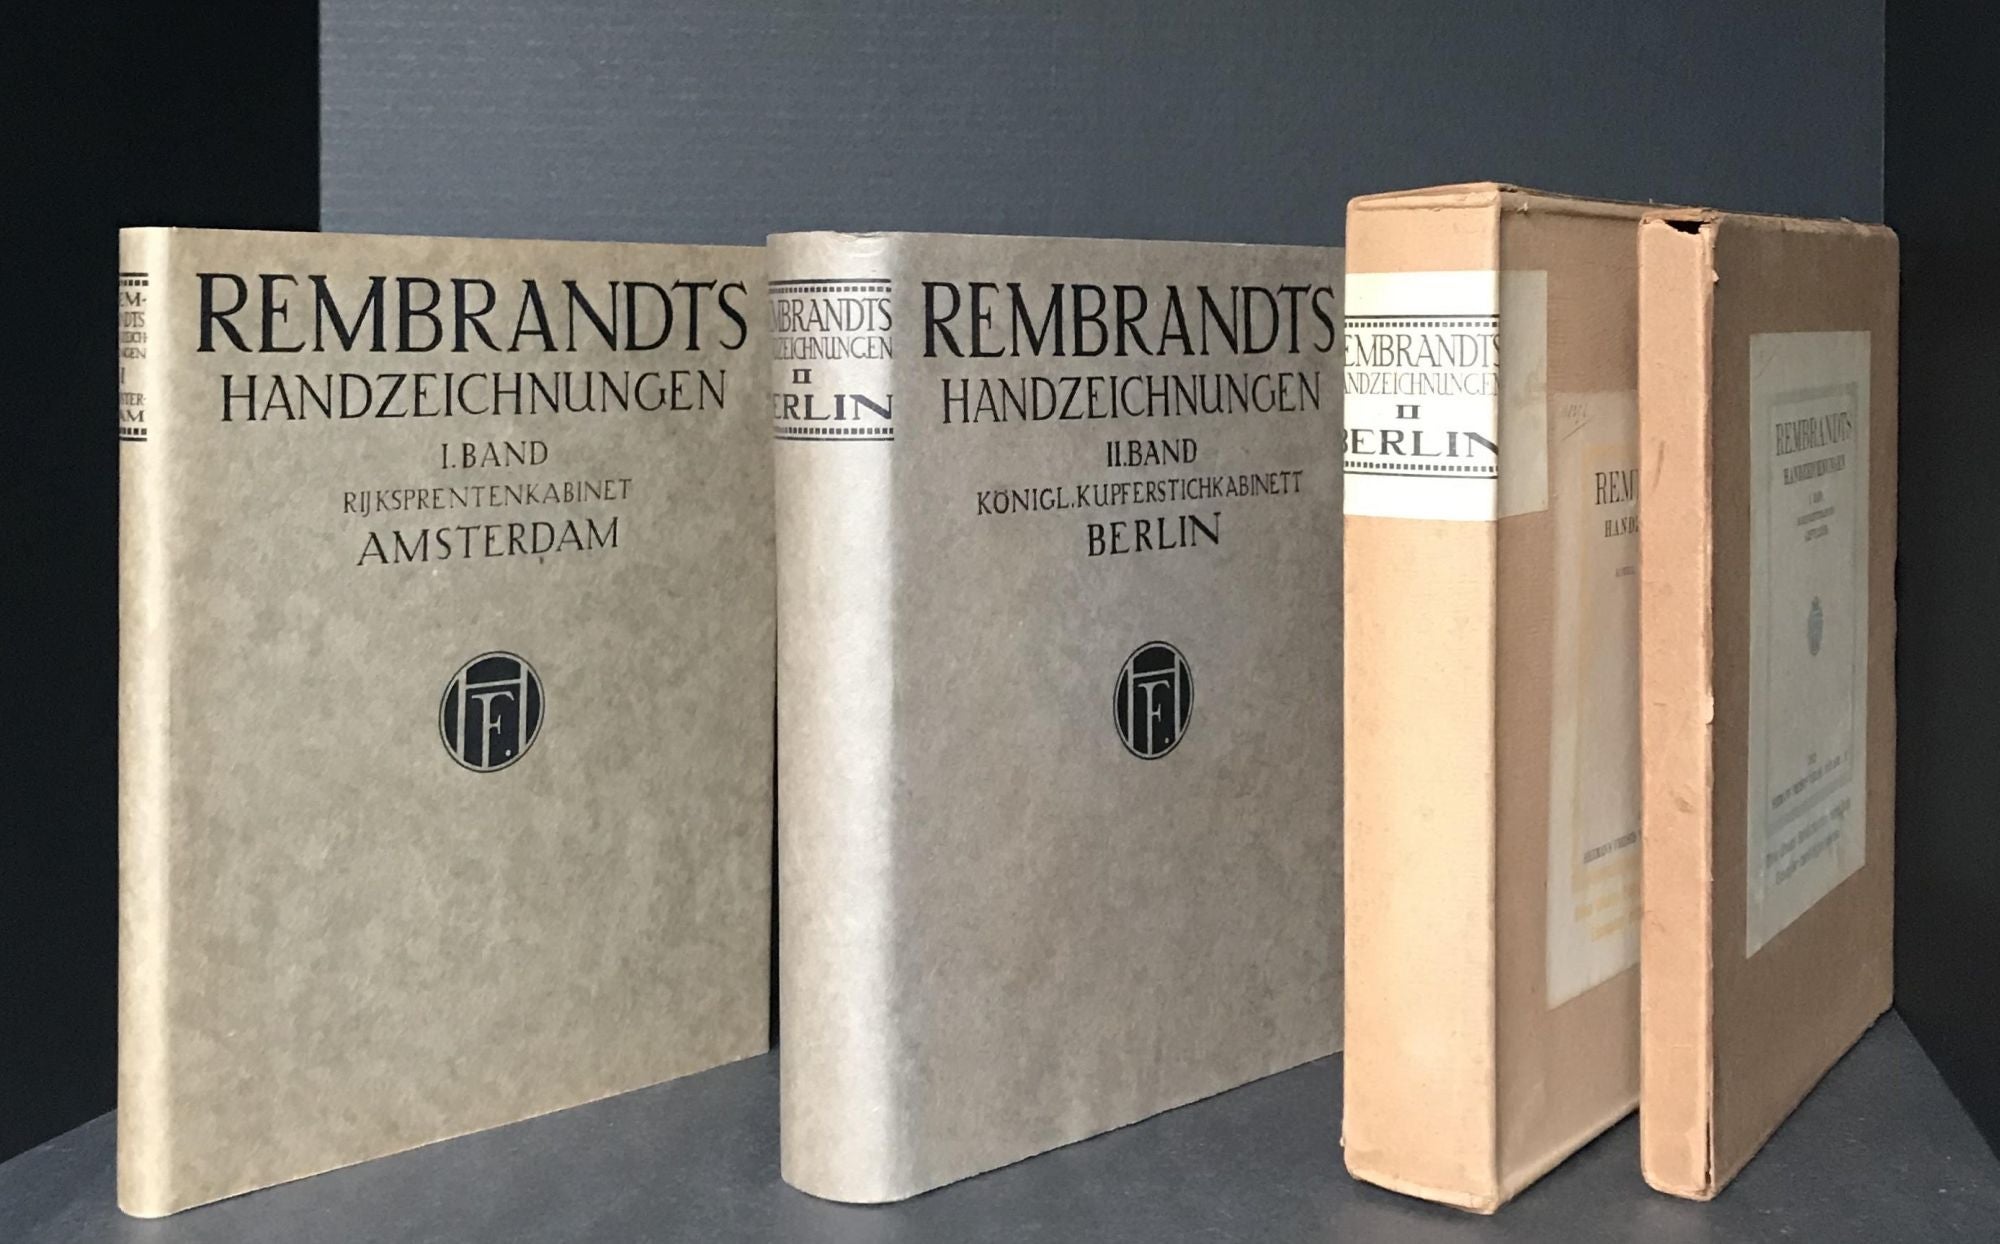 zu　and　II,　I,　1914　zu　Band　Drawings　Königl.　I.　Rembrandts　Band　II.　Rembrandt's　volumes　Handzeichnungen.　Berlin.　Kupferstichkabinett　Volume　Rijksprentenkabinet　Amsterdam.　Rembrandt　Volume　1912　First